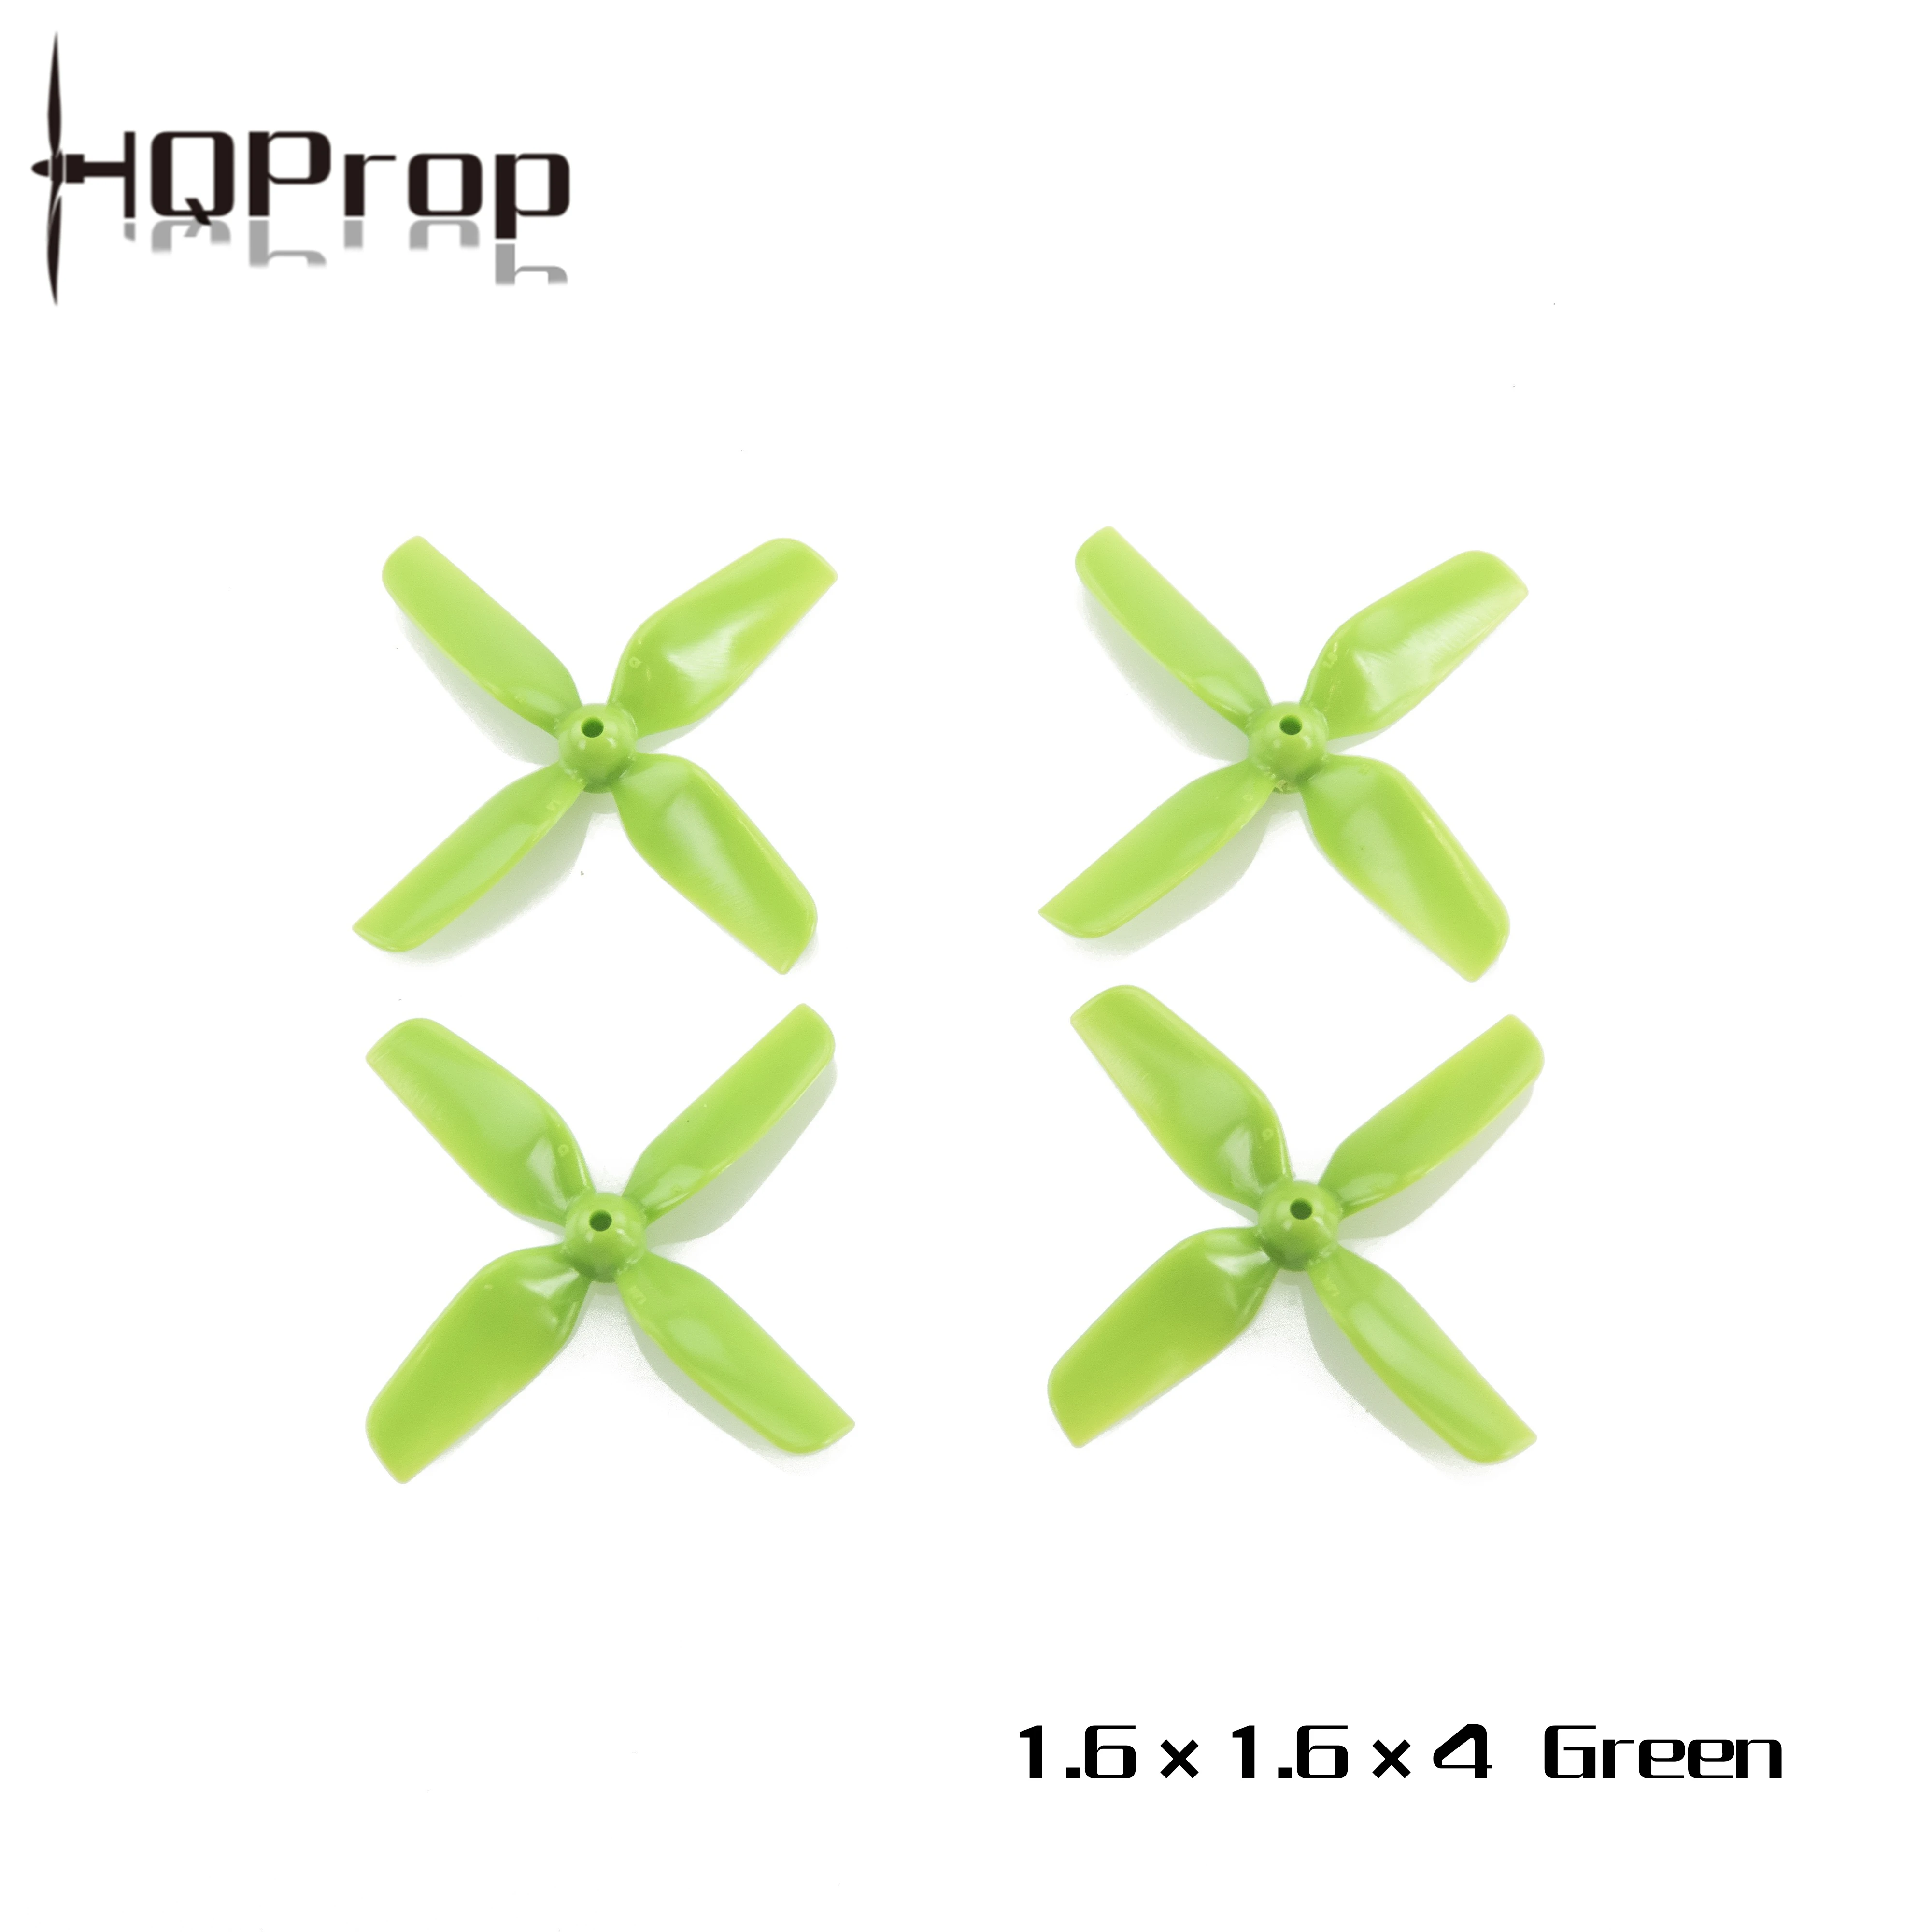 HQProp 40mm 1.6x1.6x4 Green 1.5mm propeller